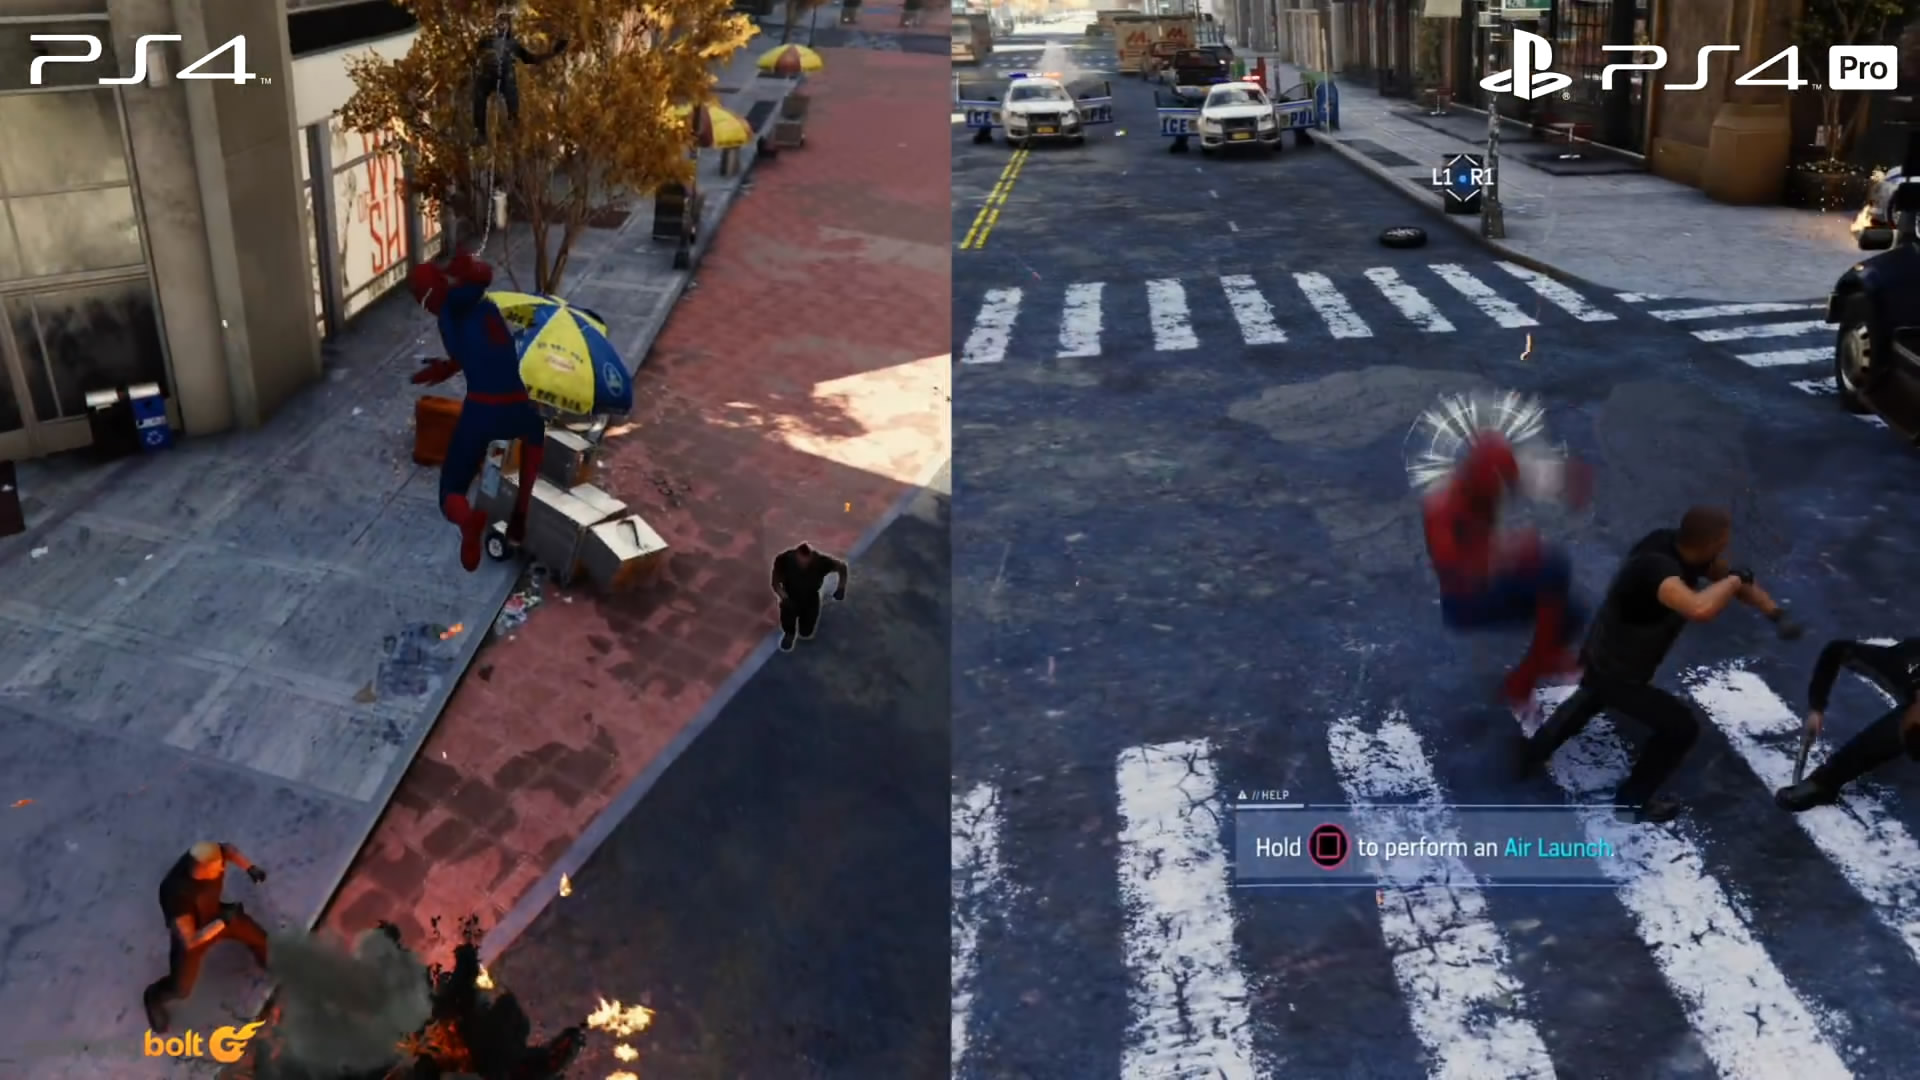 《蜘蛛人》PS4和PS4 Pro版畫面對比 後者畫面更精美